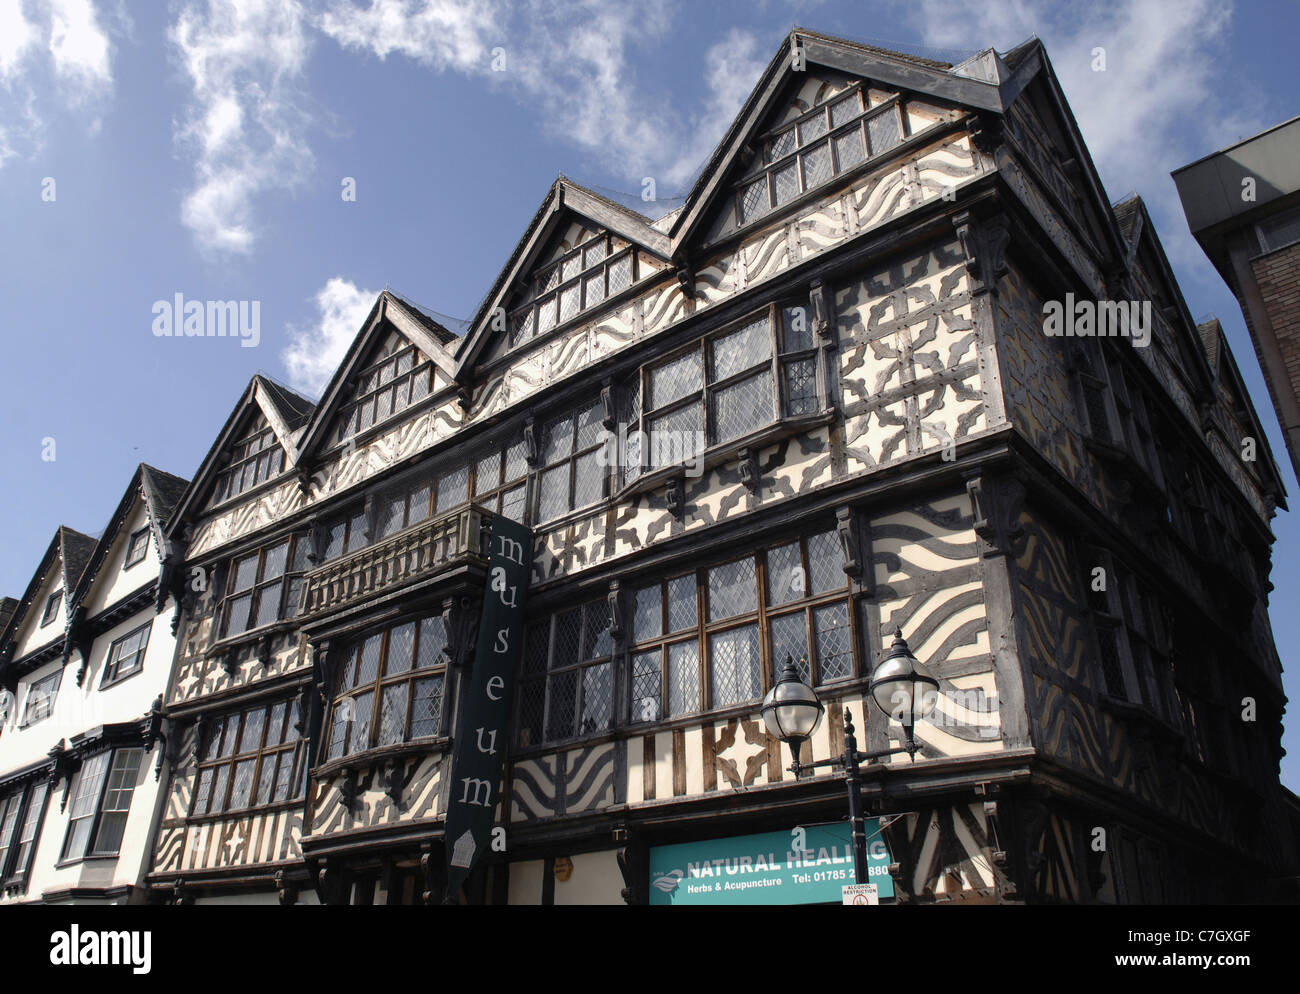 Ancienne maison forte, Stafford, Royaume-Uni. Aujourd'hui le plus grand cadre en bois chambre à partir de la période Tudor, construit en 1595. Banque D'Images